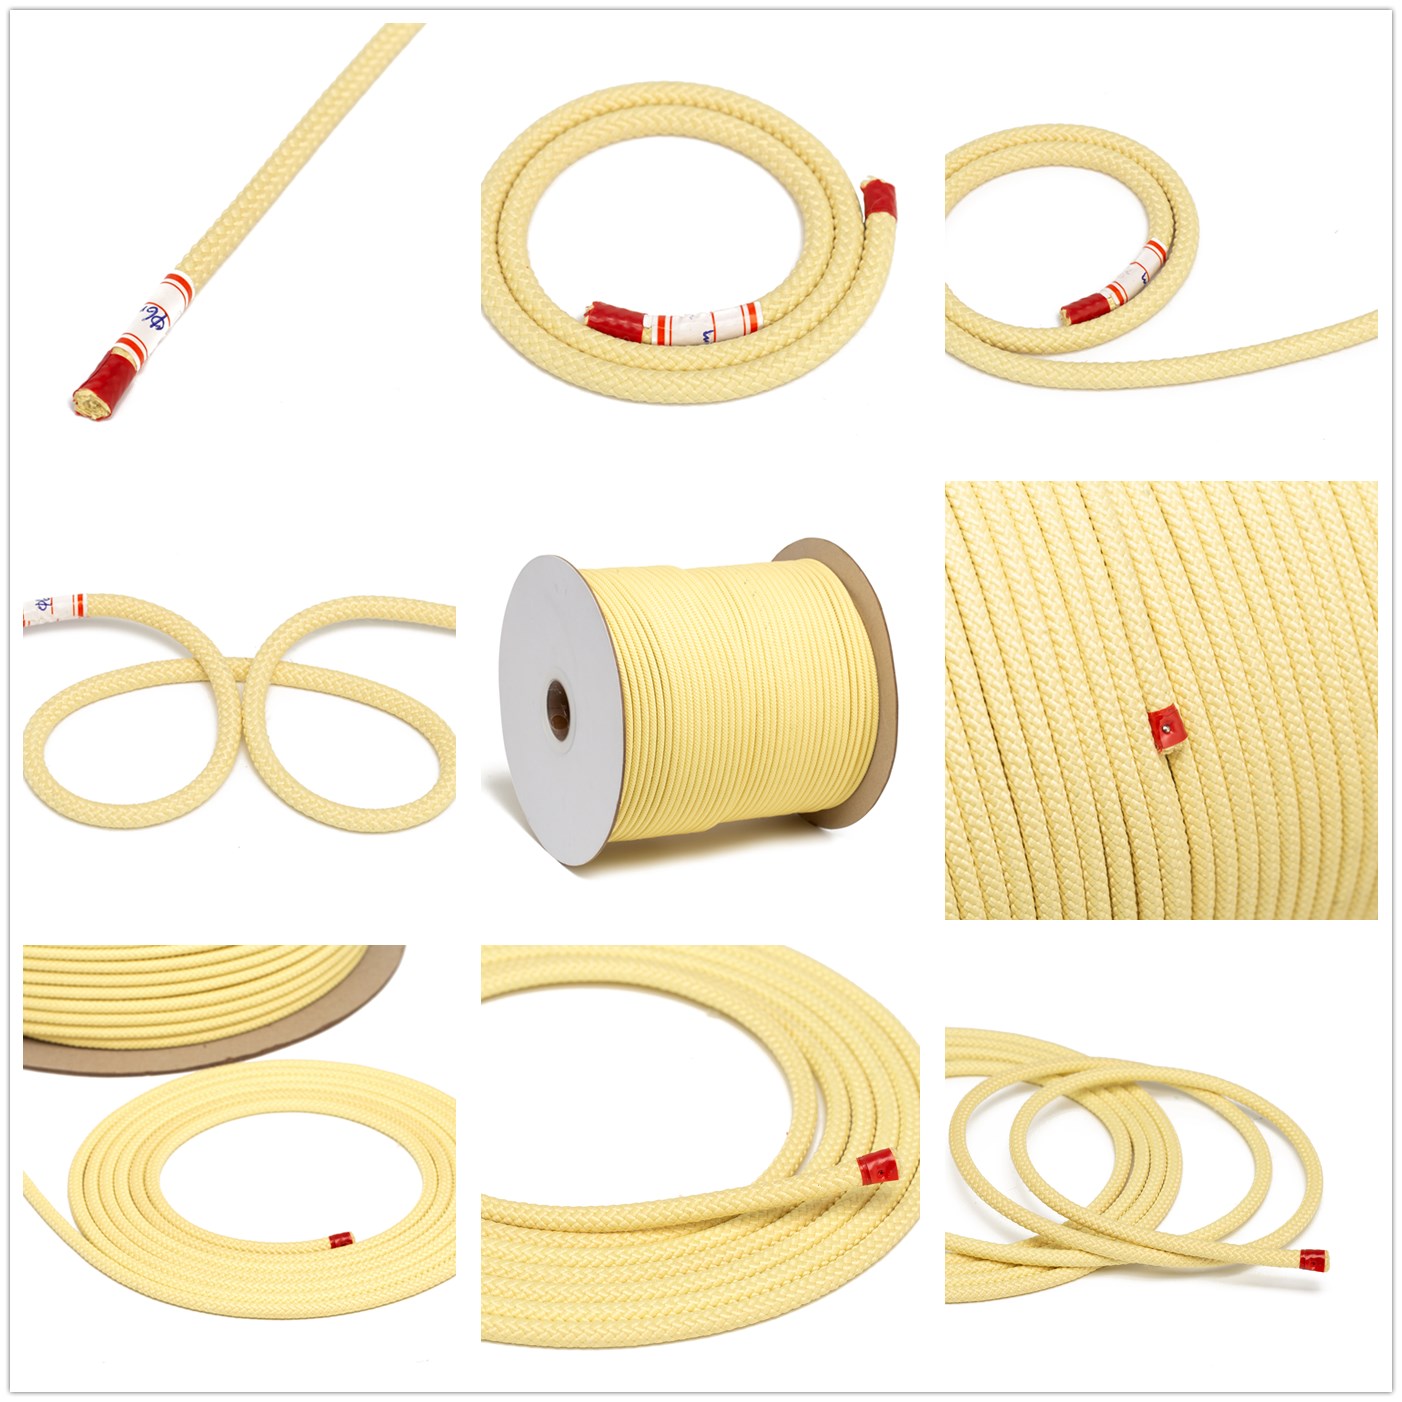 (17) 圆绳kevlar rope (round).jpg